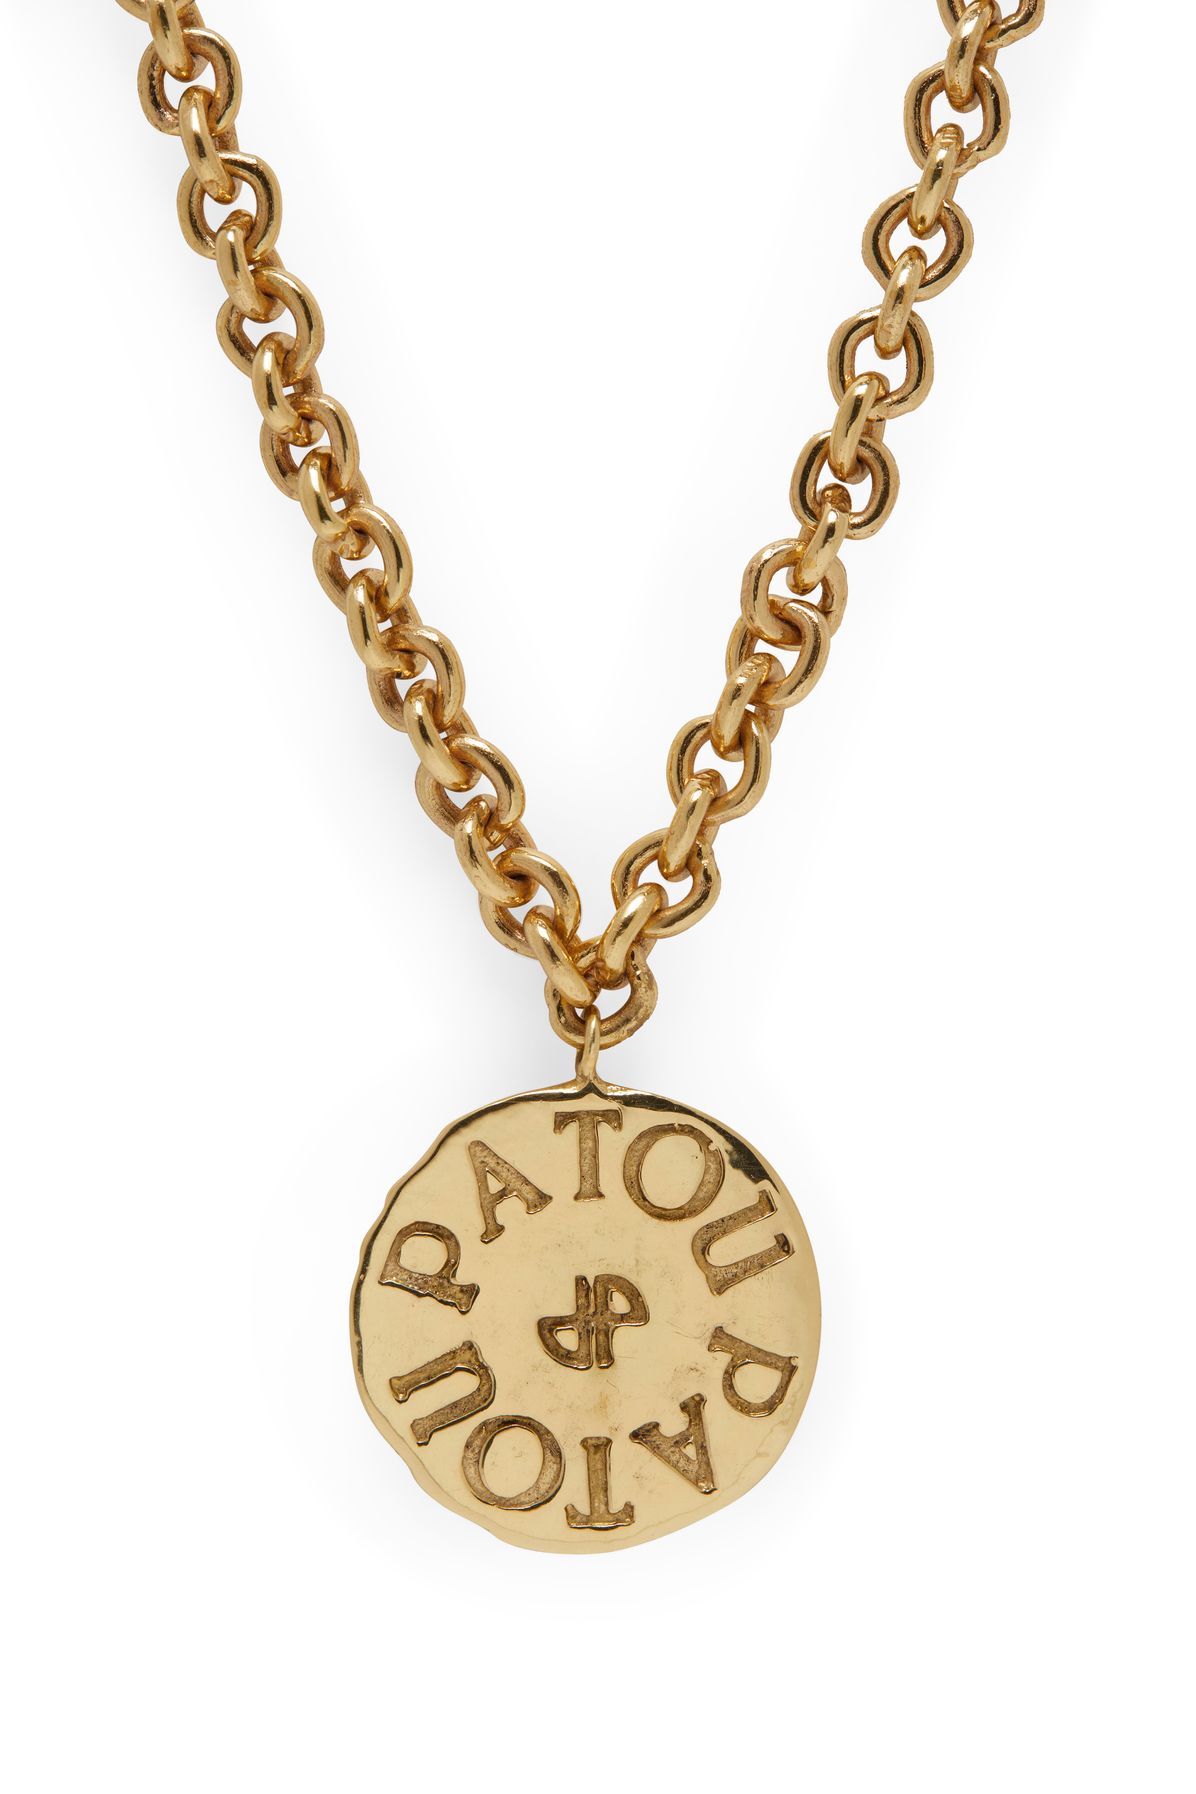 Patou Antique Coin Charm Necklace